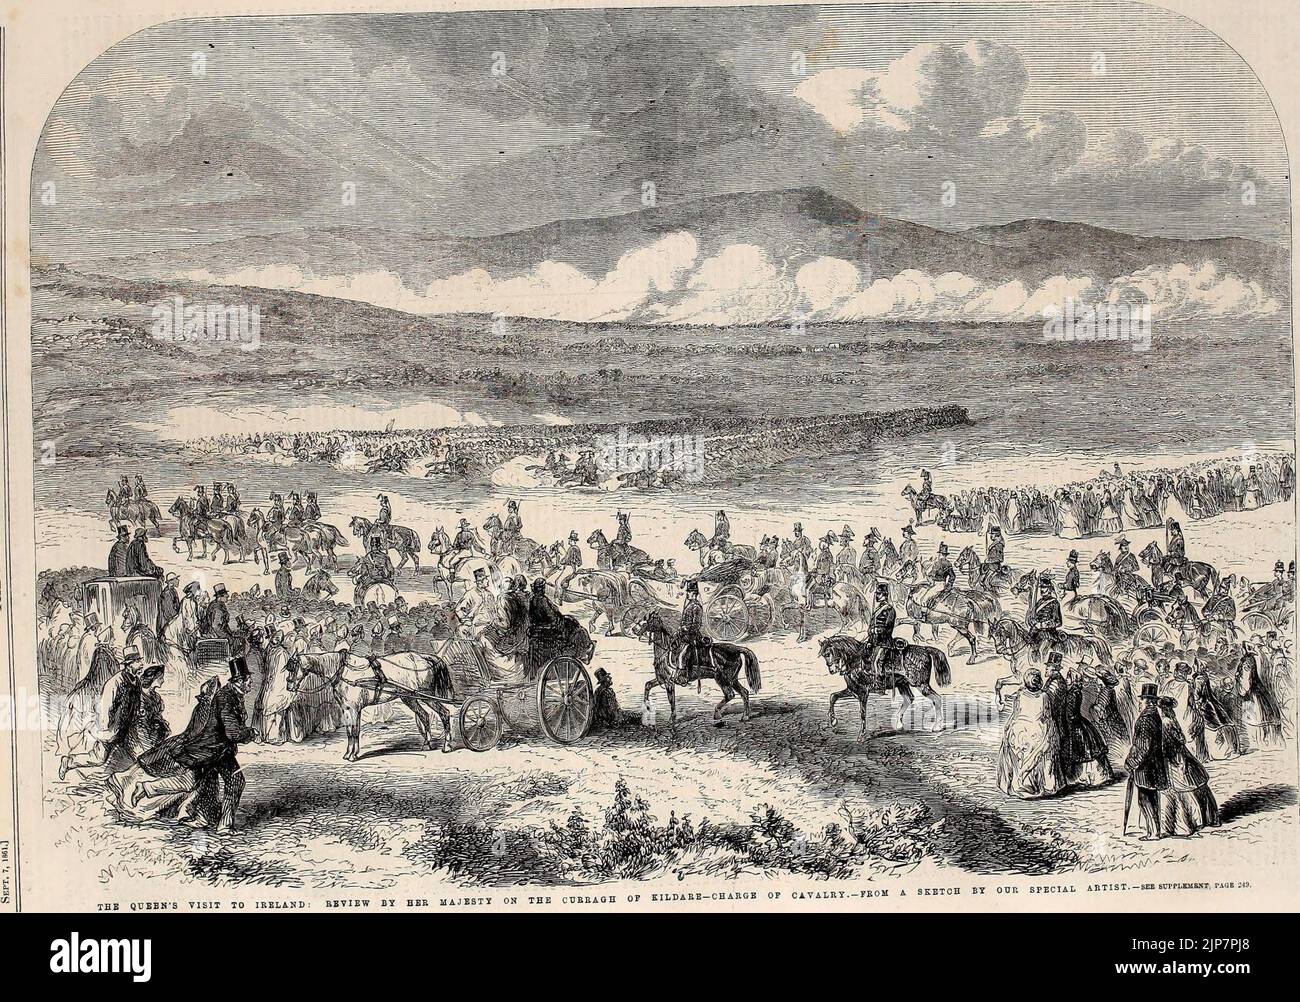 La visite de la Reine en Irlande, revue par sa Majesté sur le Curragh de Kildare, charge de Cavalry - ILN 1861 Banque D'Images